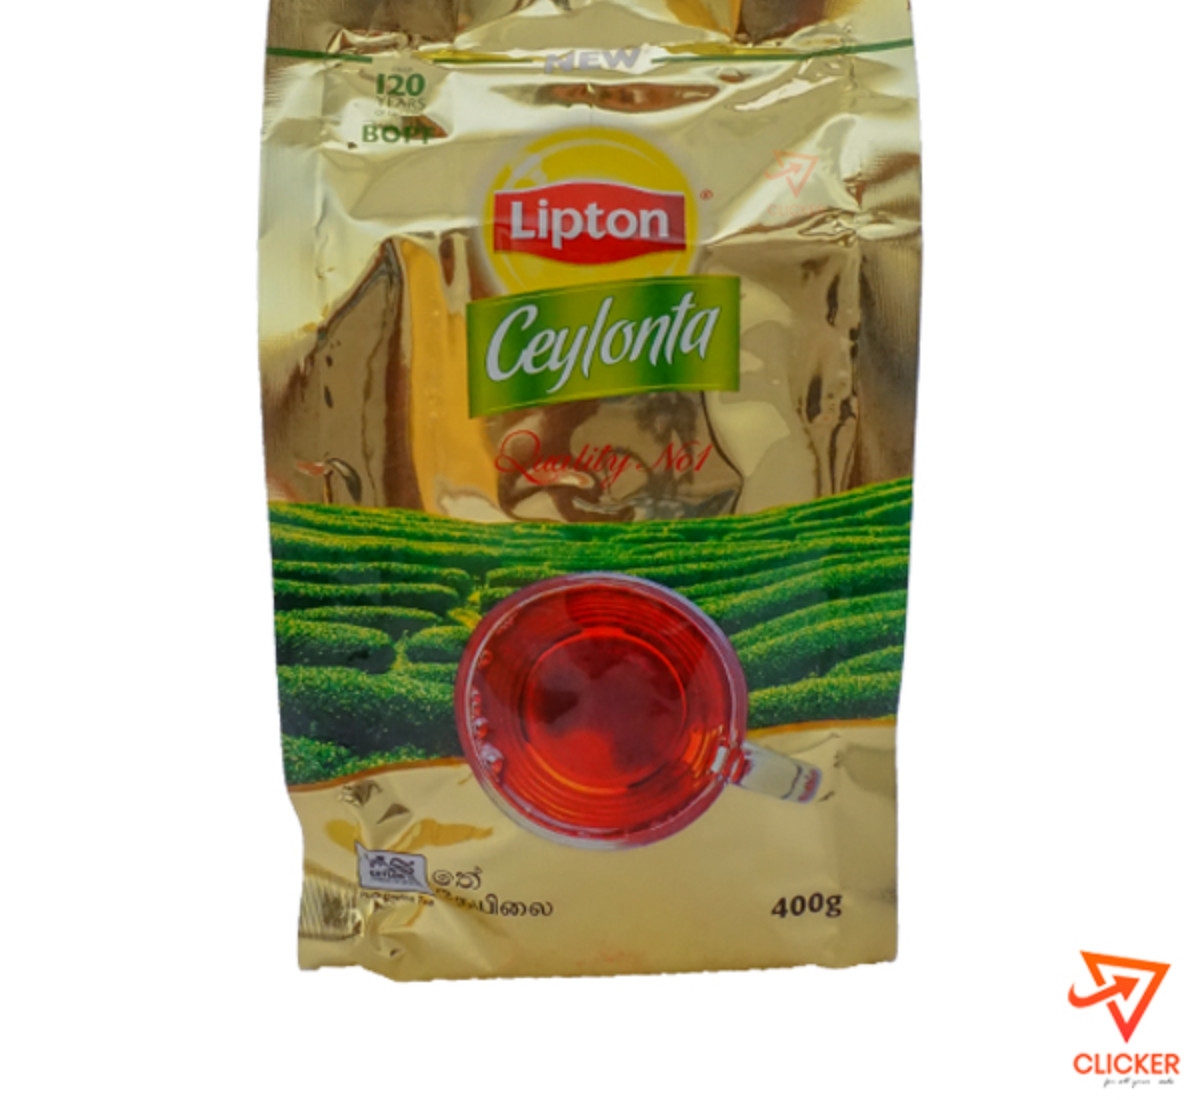 Clicker product 400g LIPTON Ceylonta Tea 949